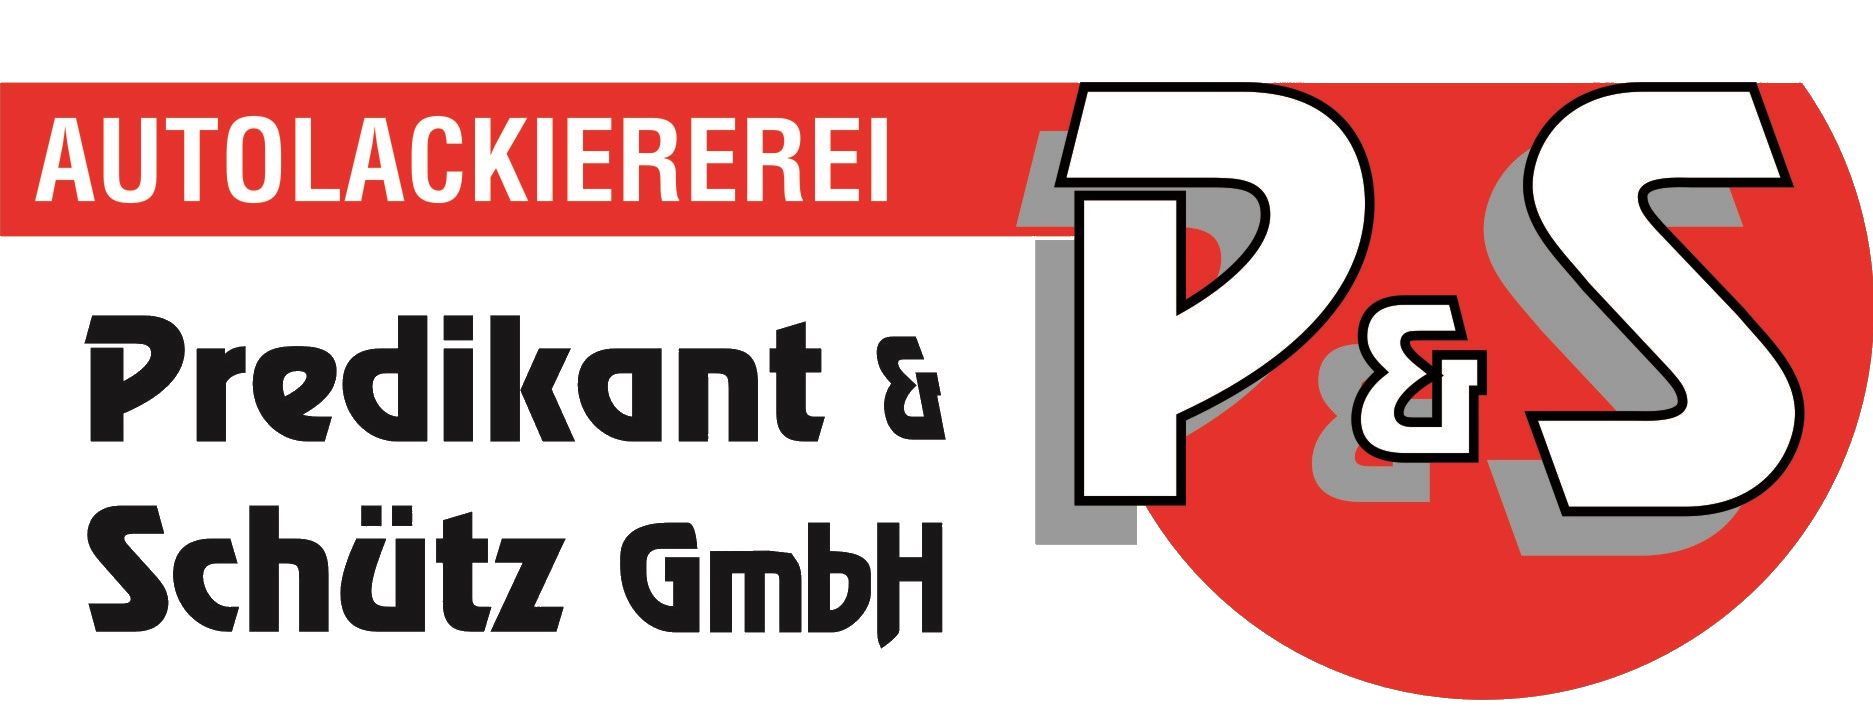 Predikant & Schütz GmbH Logo